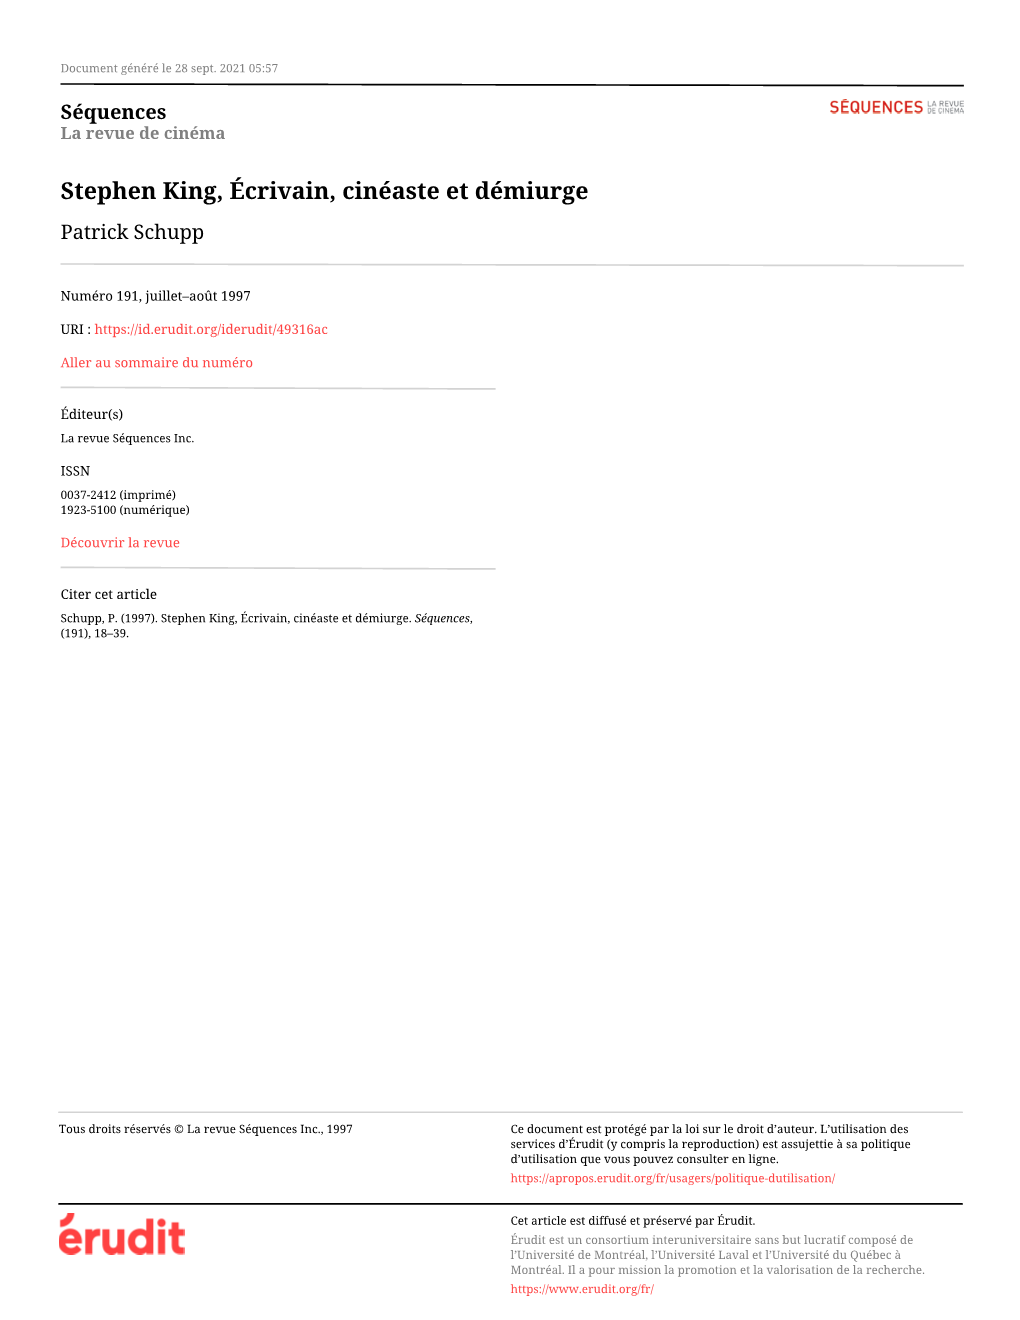 Stephen King, Écrivain, Cinéaste Et Démiurge Patrick Schupp